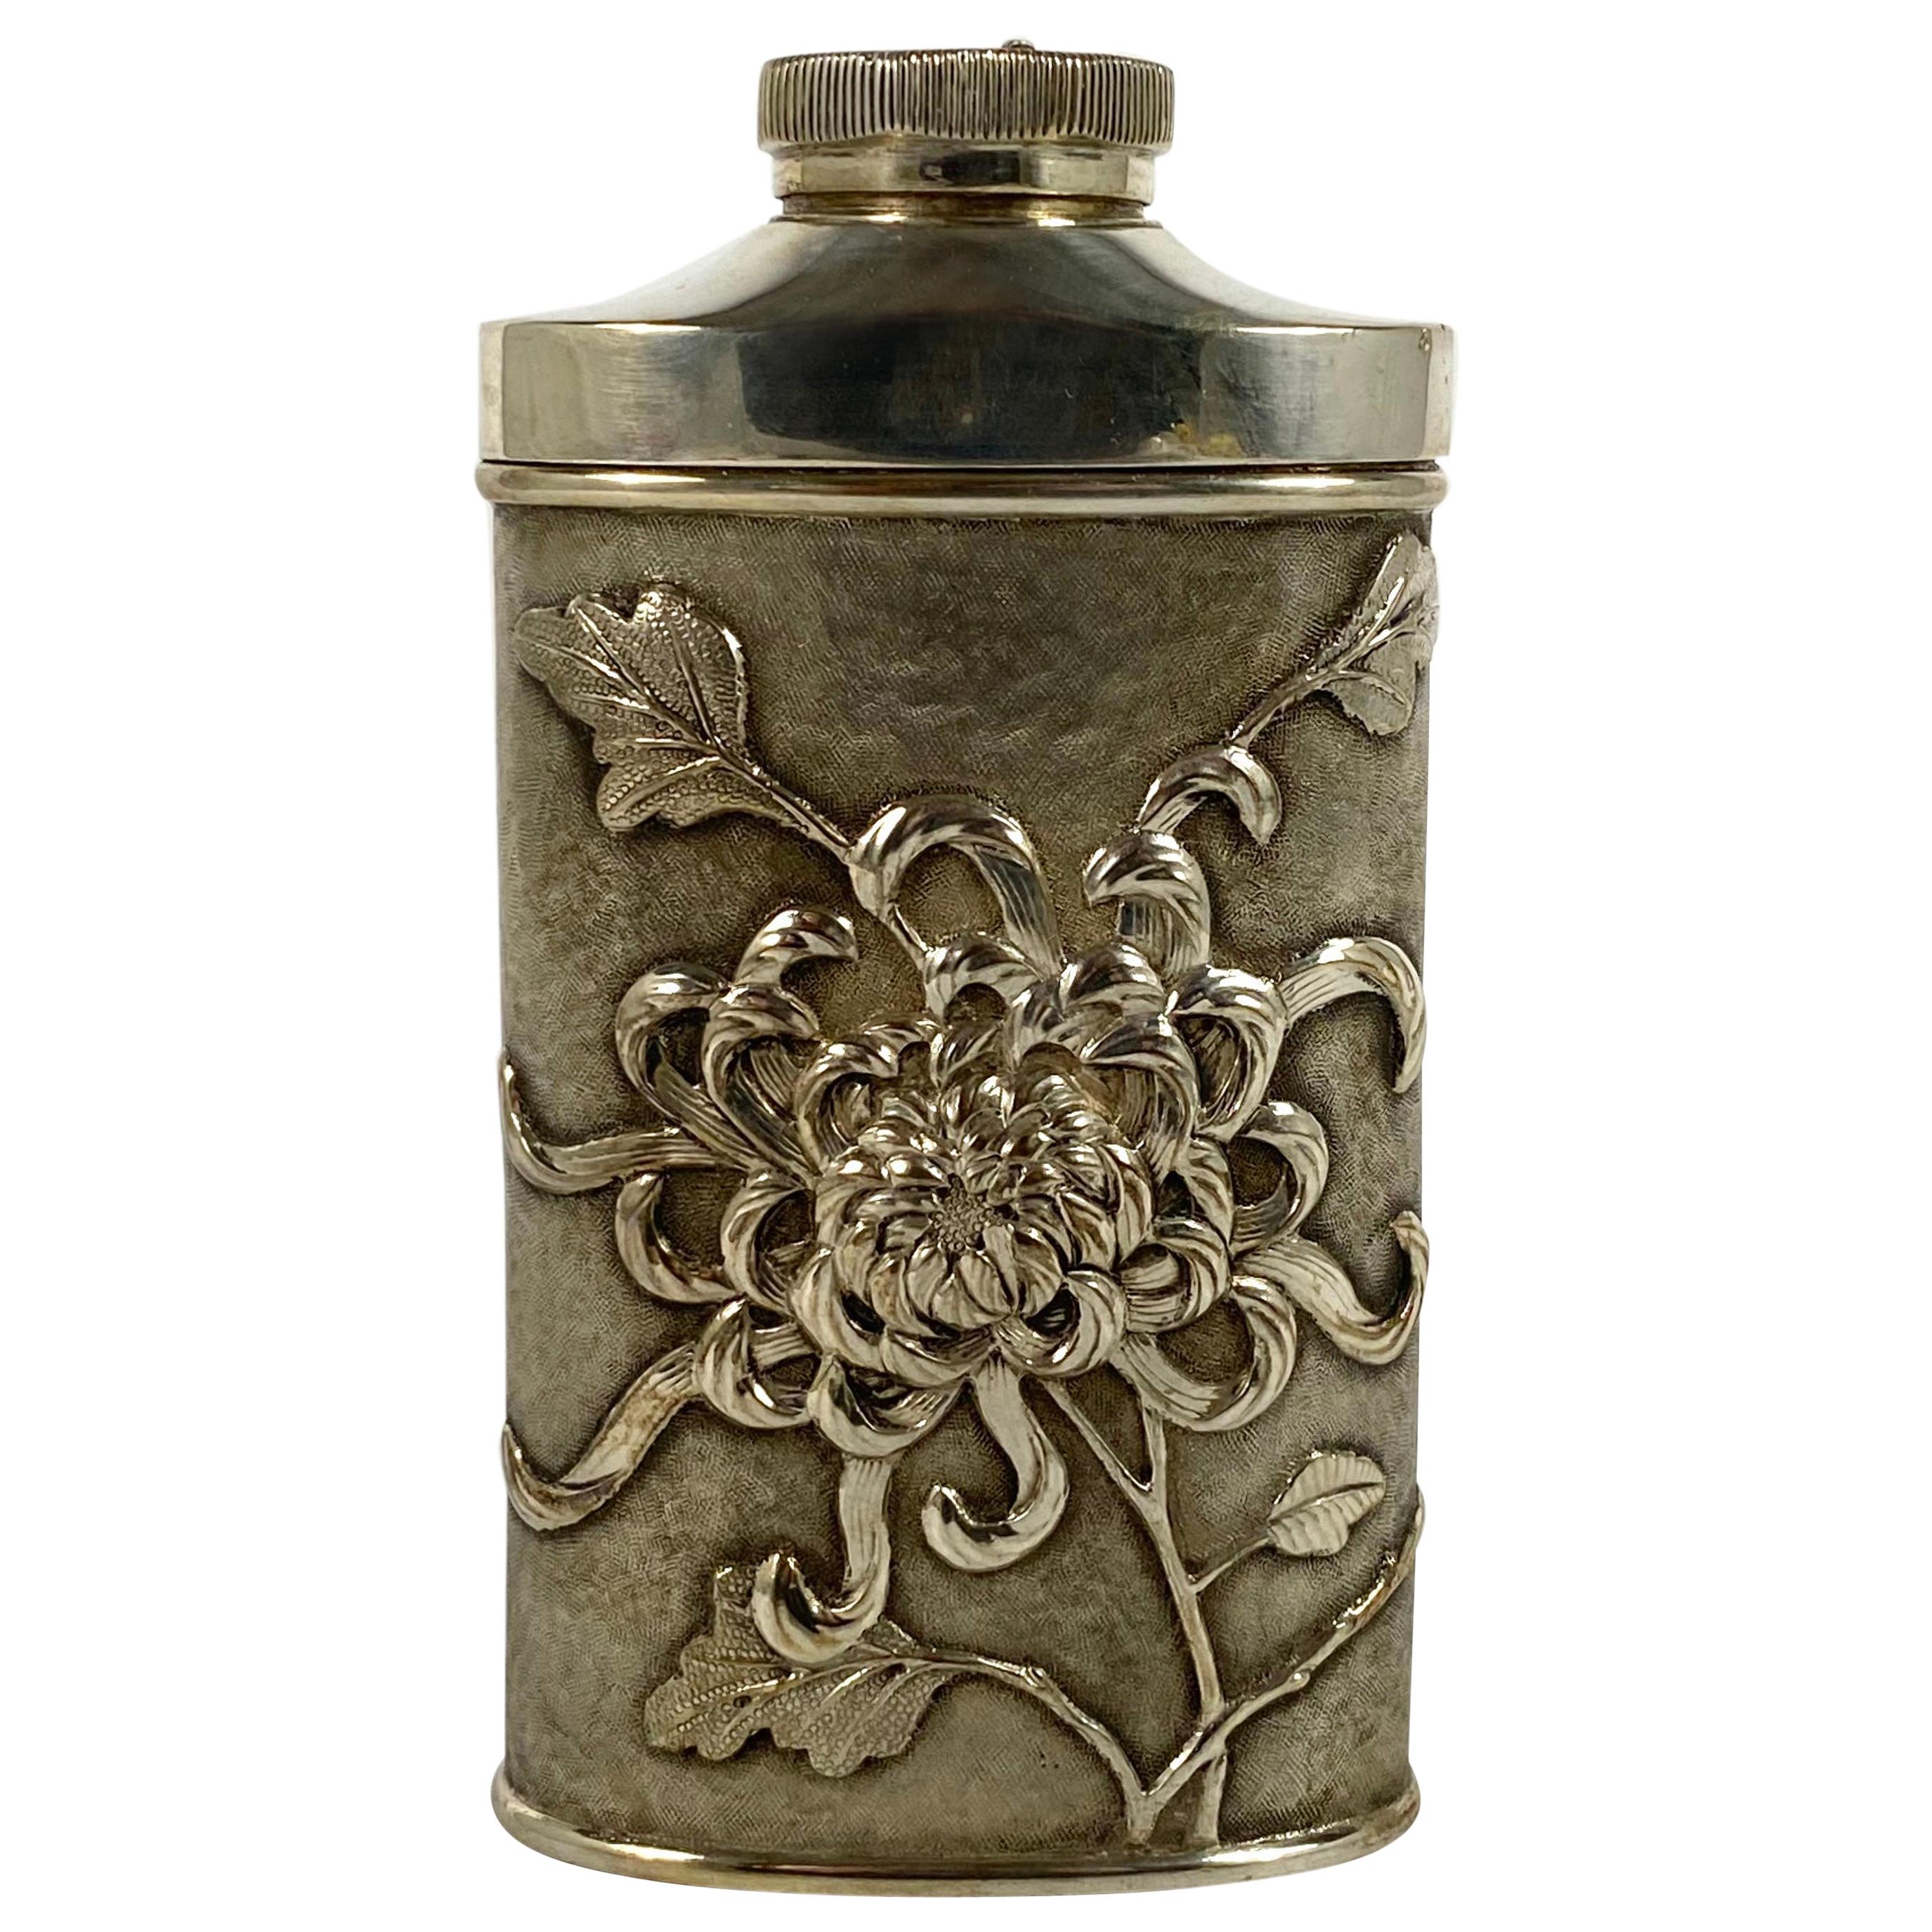 Chinese Silver Talcum Powder Dispenser, Luen Wo, Shanghai, circa 1900